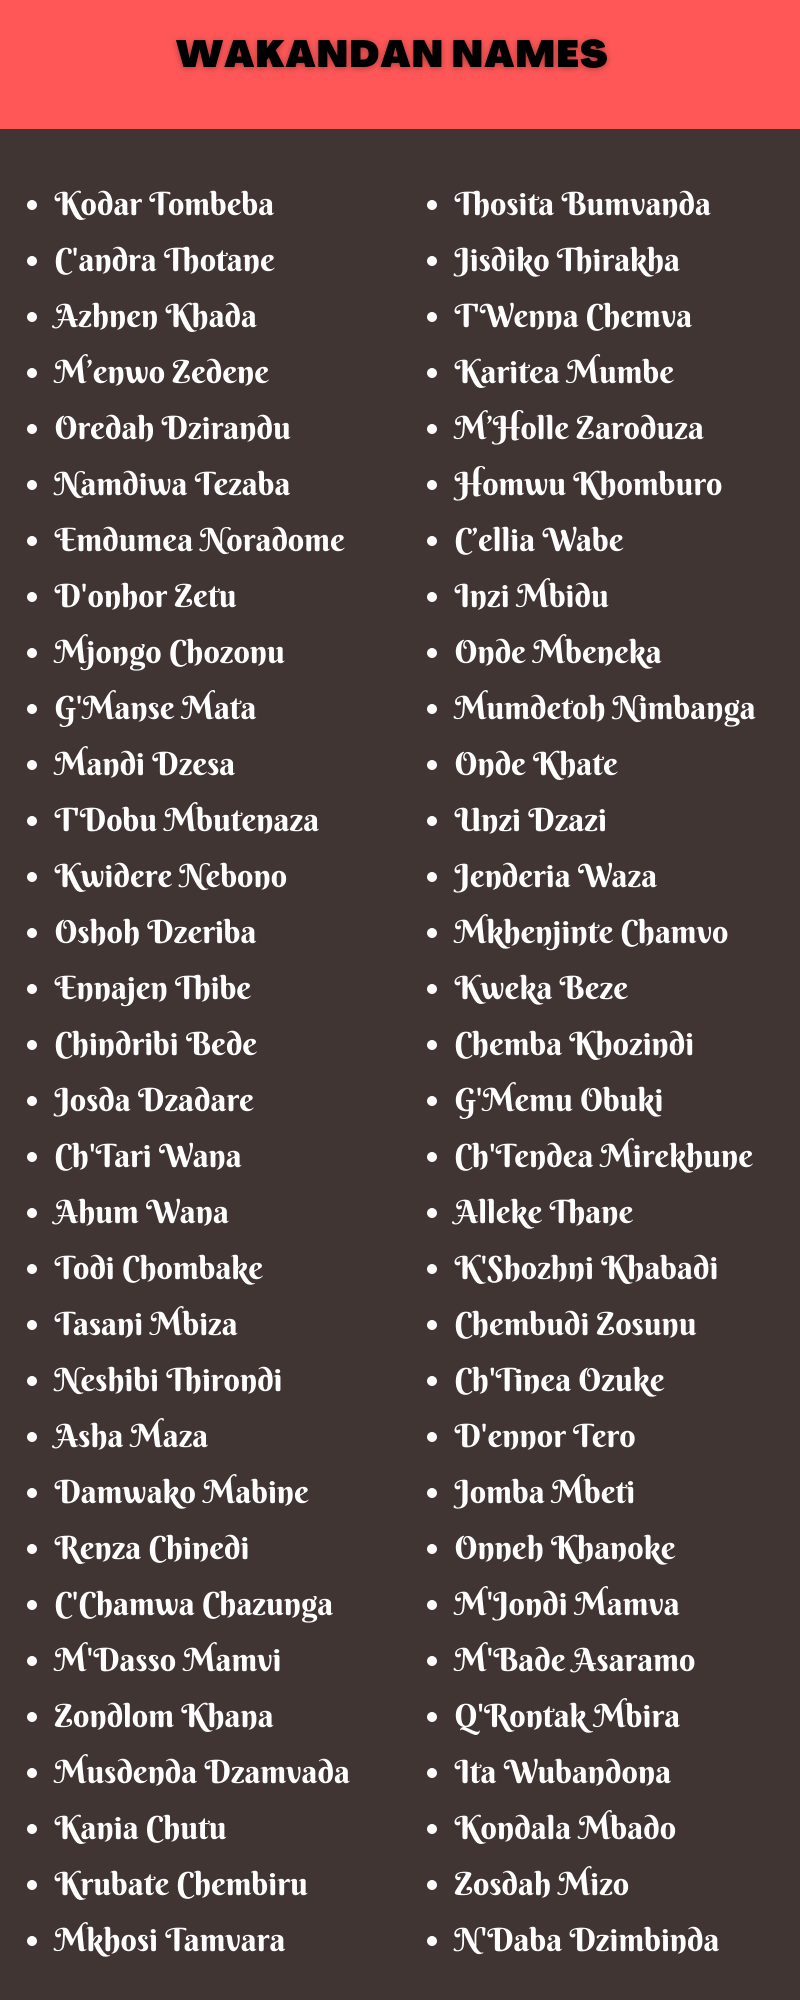 Wakandan Names